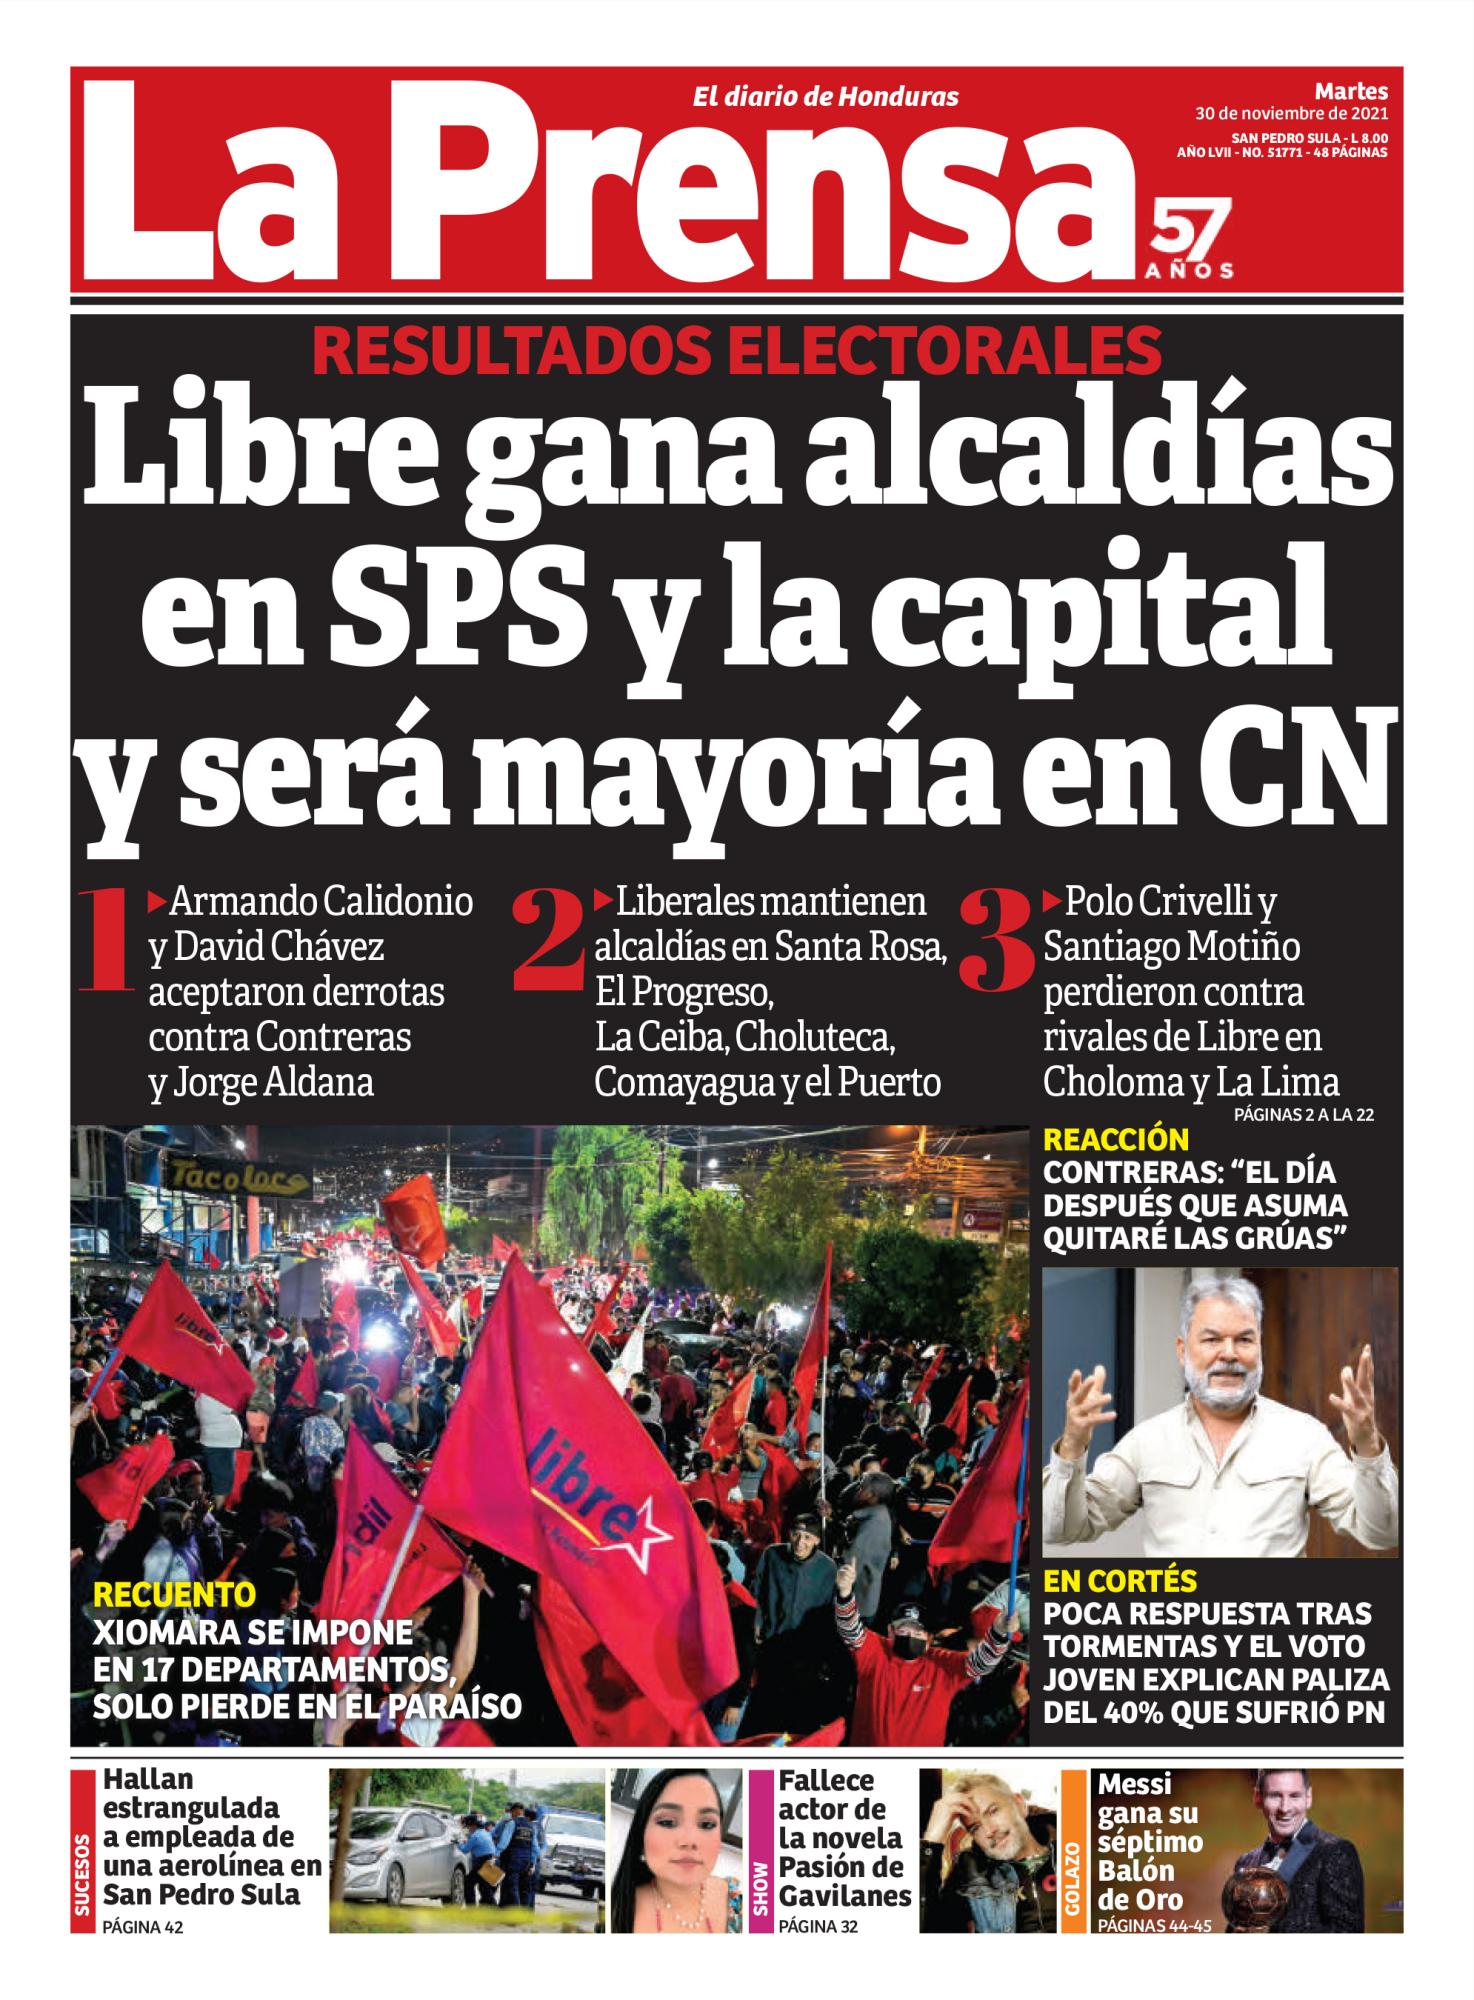 Libre gana alcaldías en SPS y la capital y será mayoría en CN